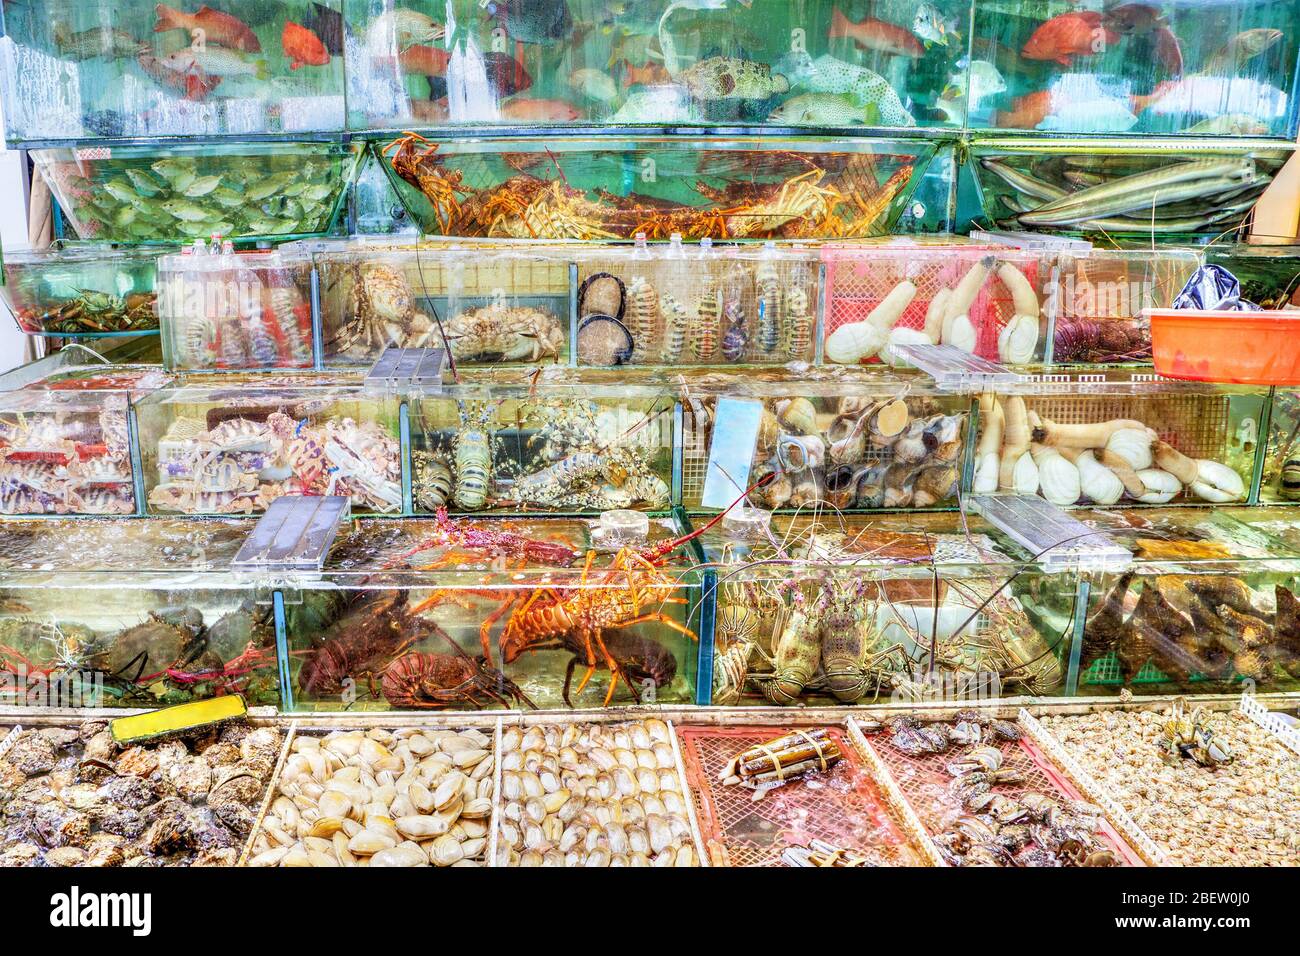 Pesci, aragoste, granchi e altri molluschi sono ammassati in vasche di pesce al mercato ittico di Sai Kung, Hong Kong. Il villaggio di Sai Kung è famoso per Foto Stock